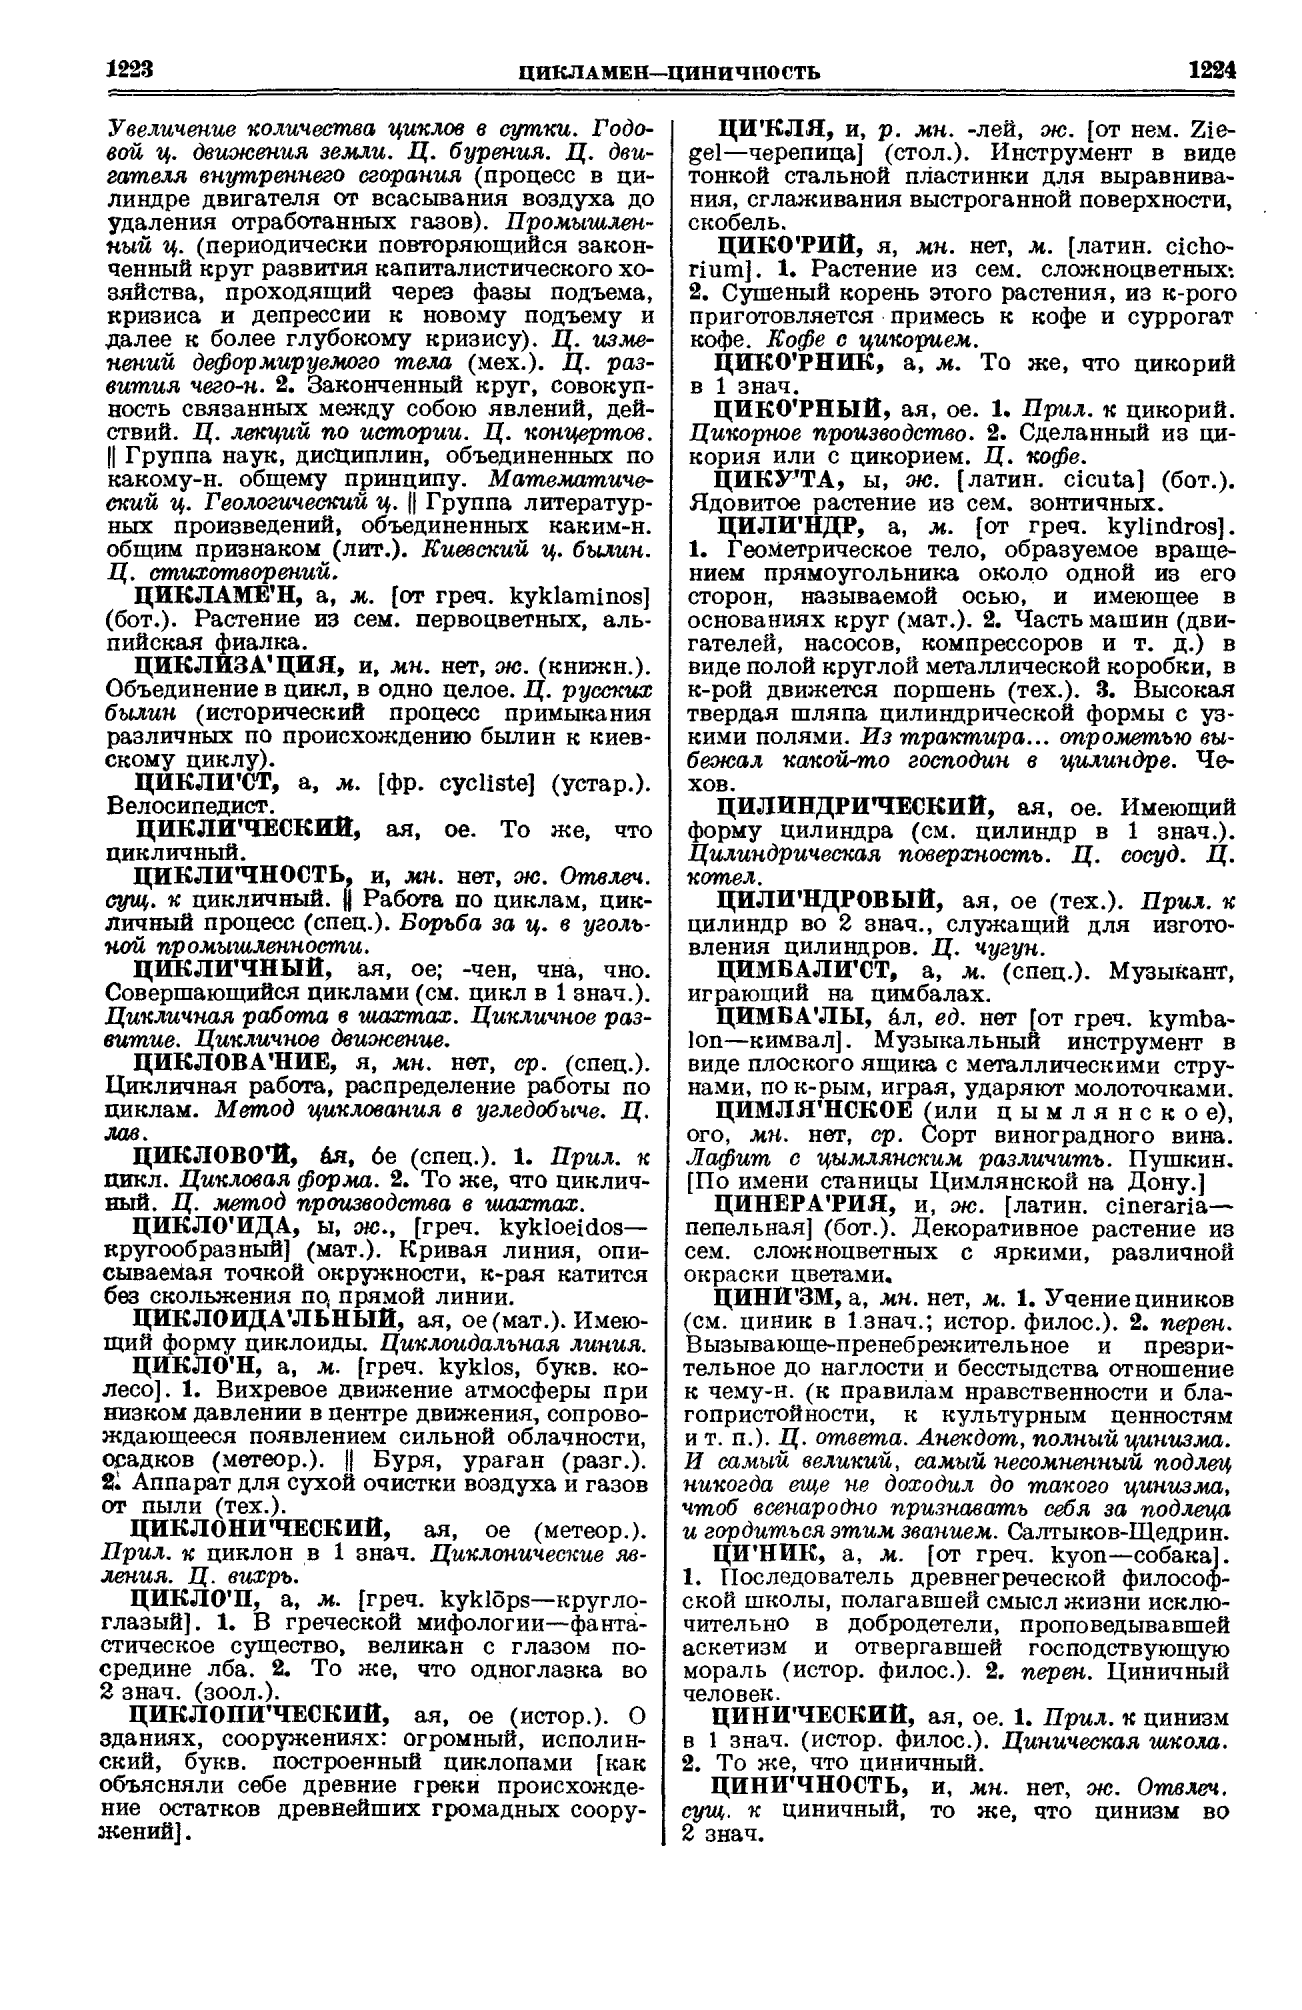 Фотокопия pdf / скан страницы 612 толкового словаря Ушакова (том 1)